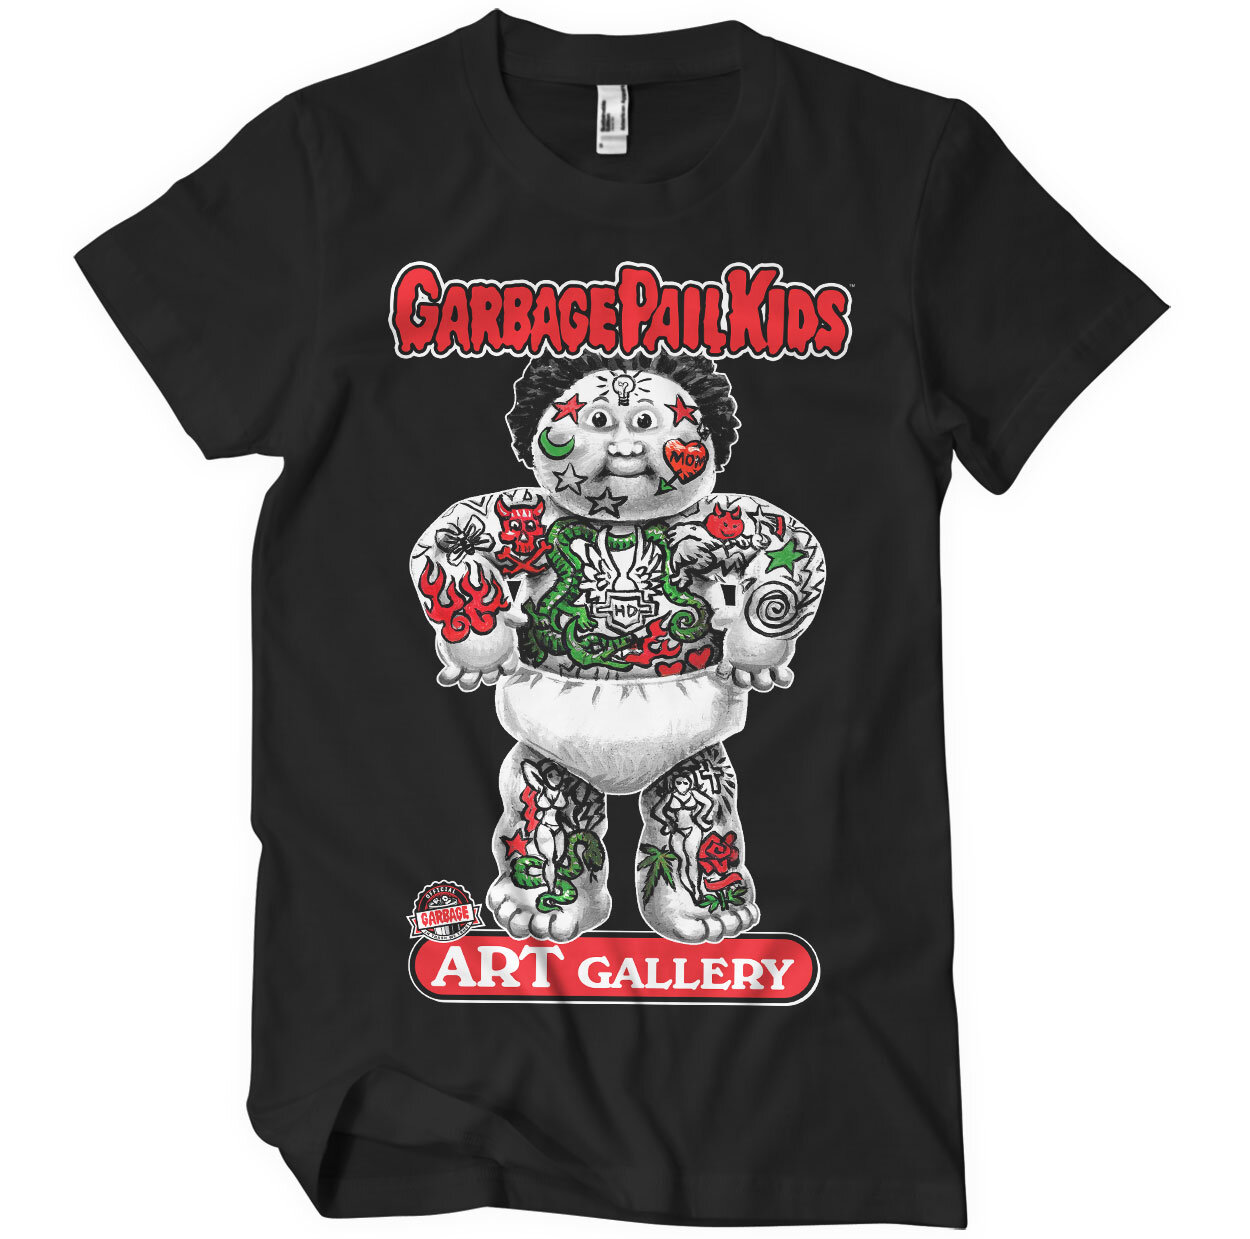 Art Gallery T-Shirt